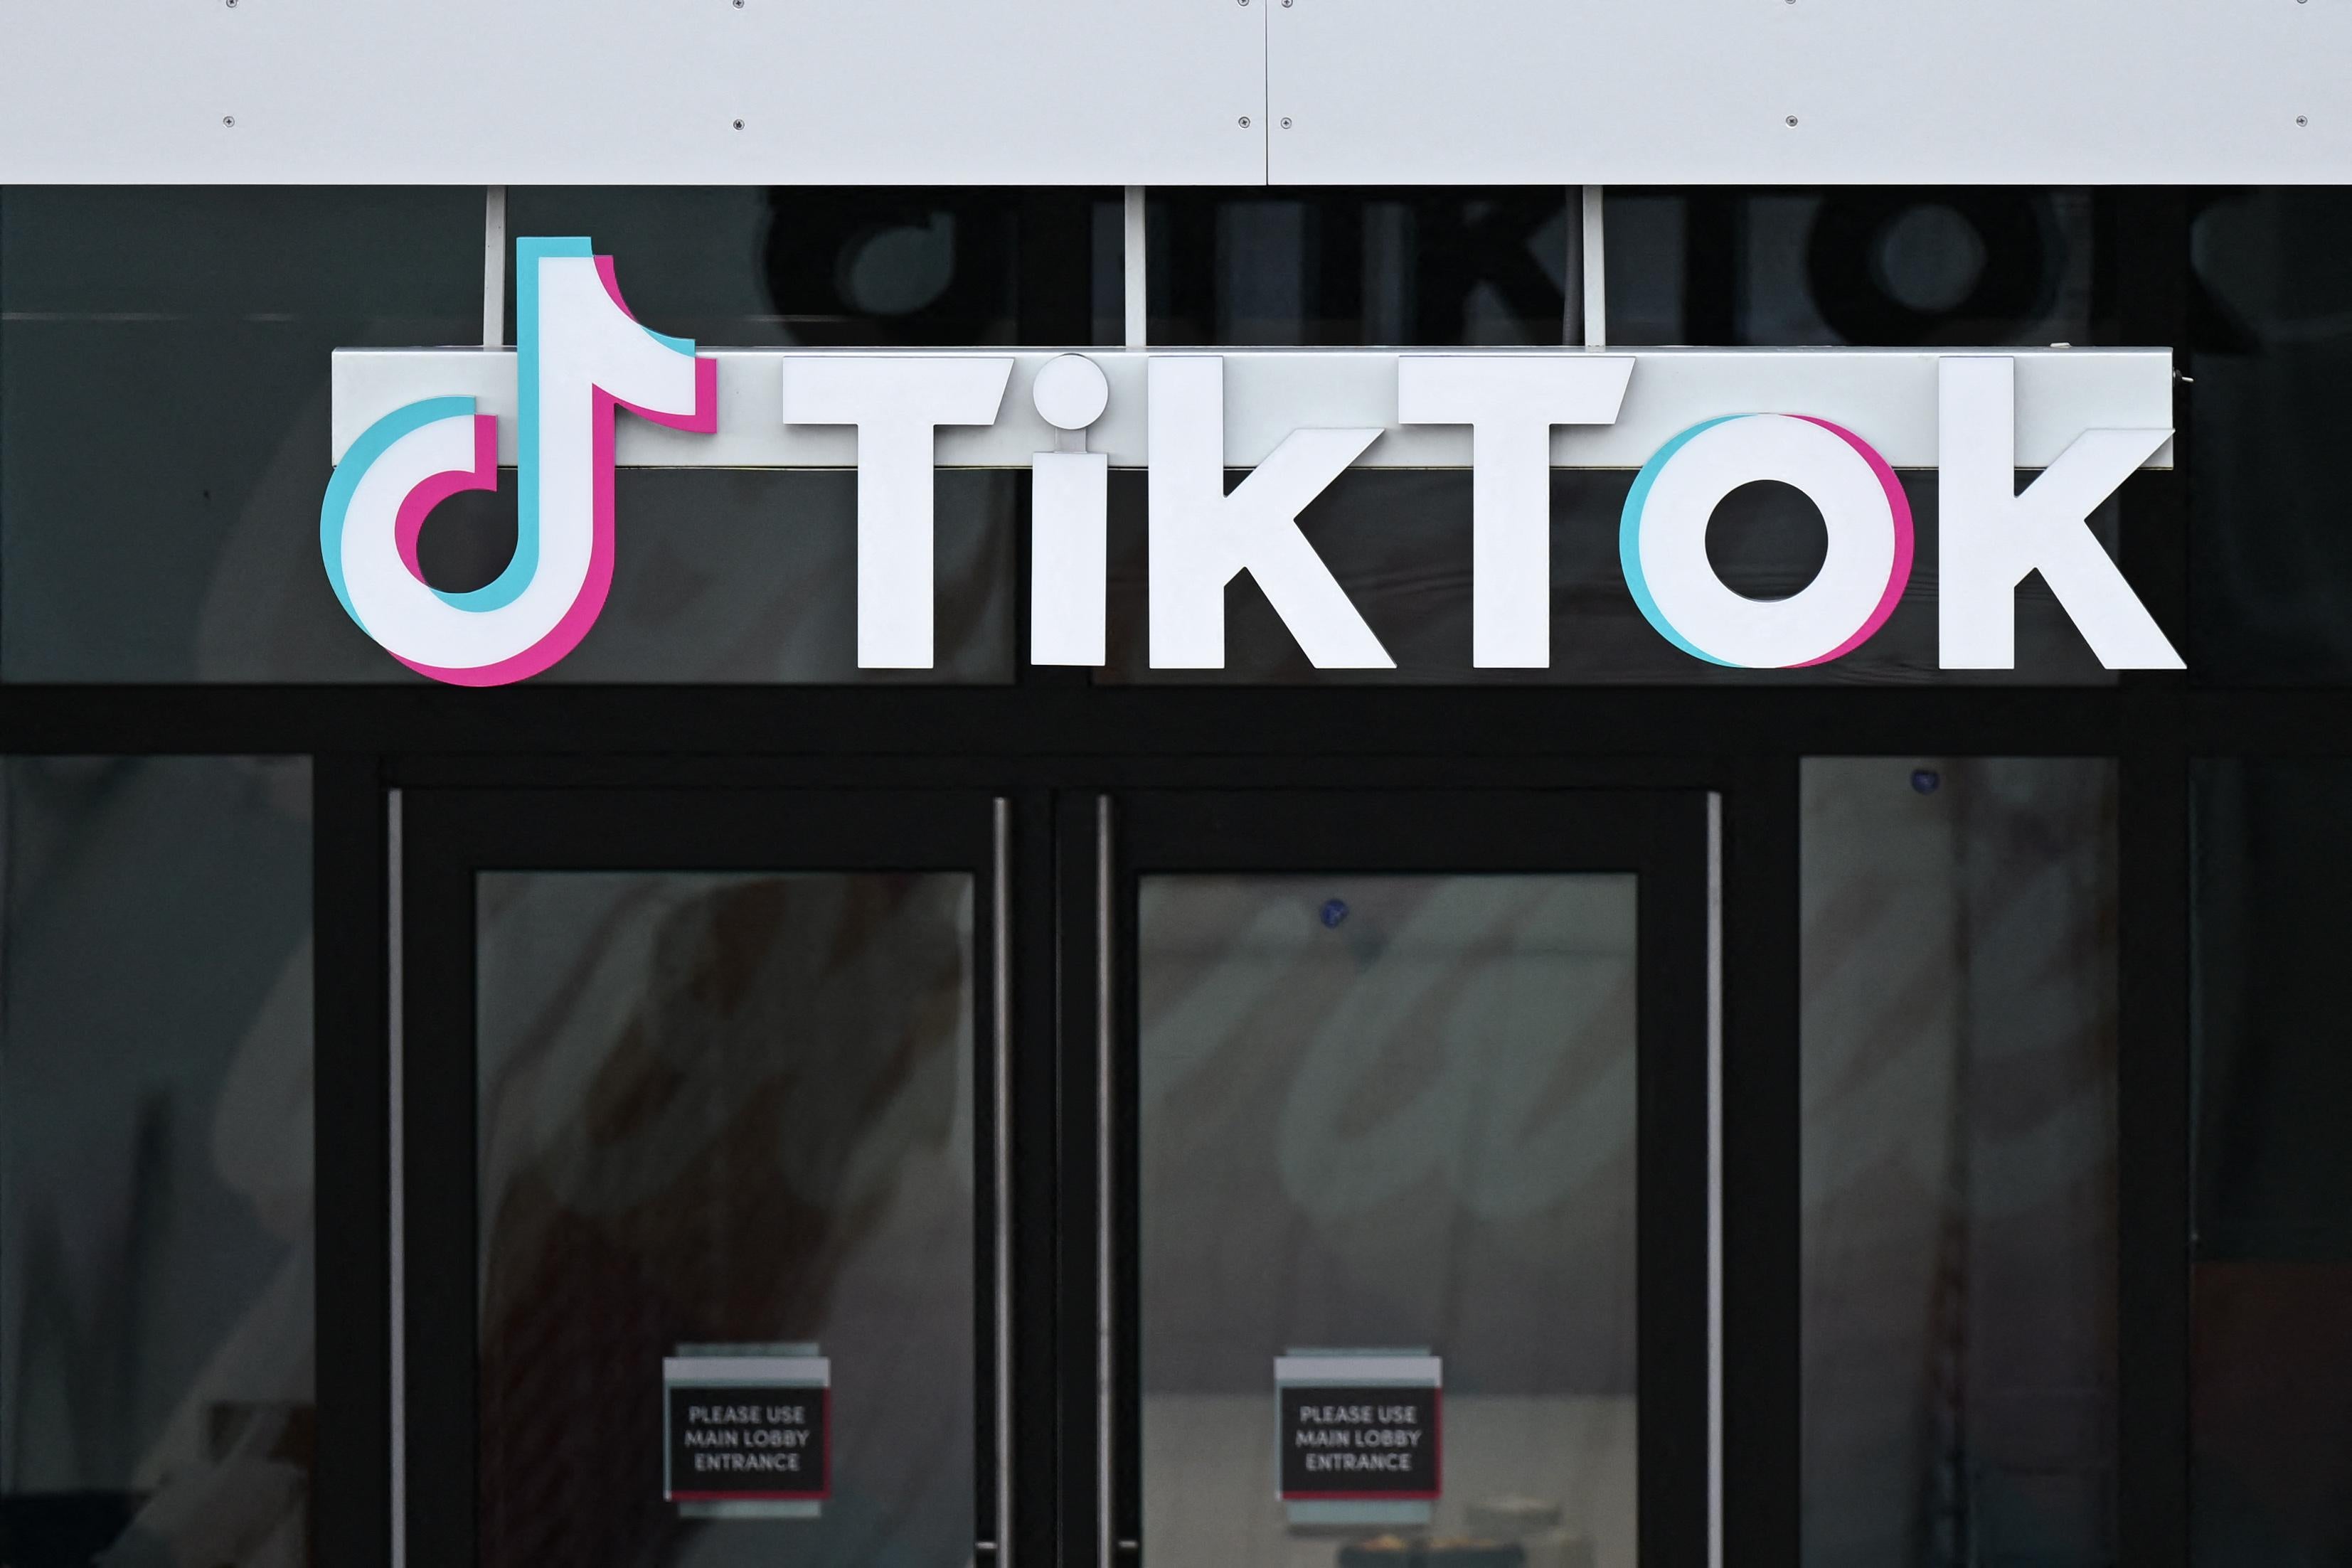 The TikTok logo seen above an office entrance